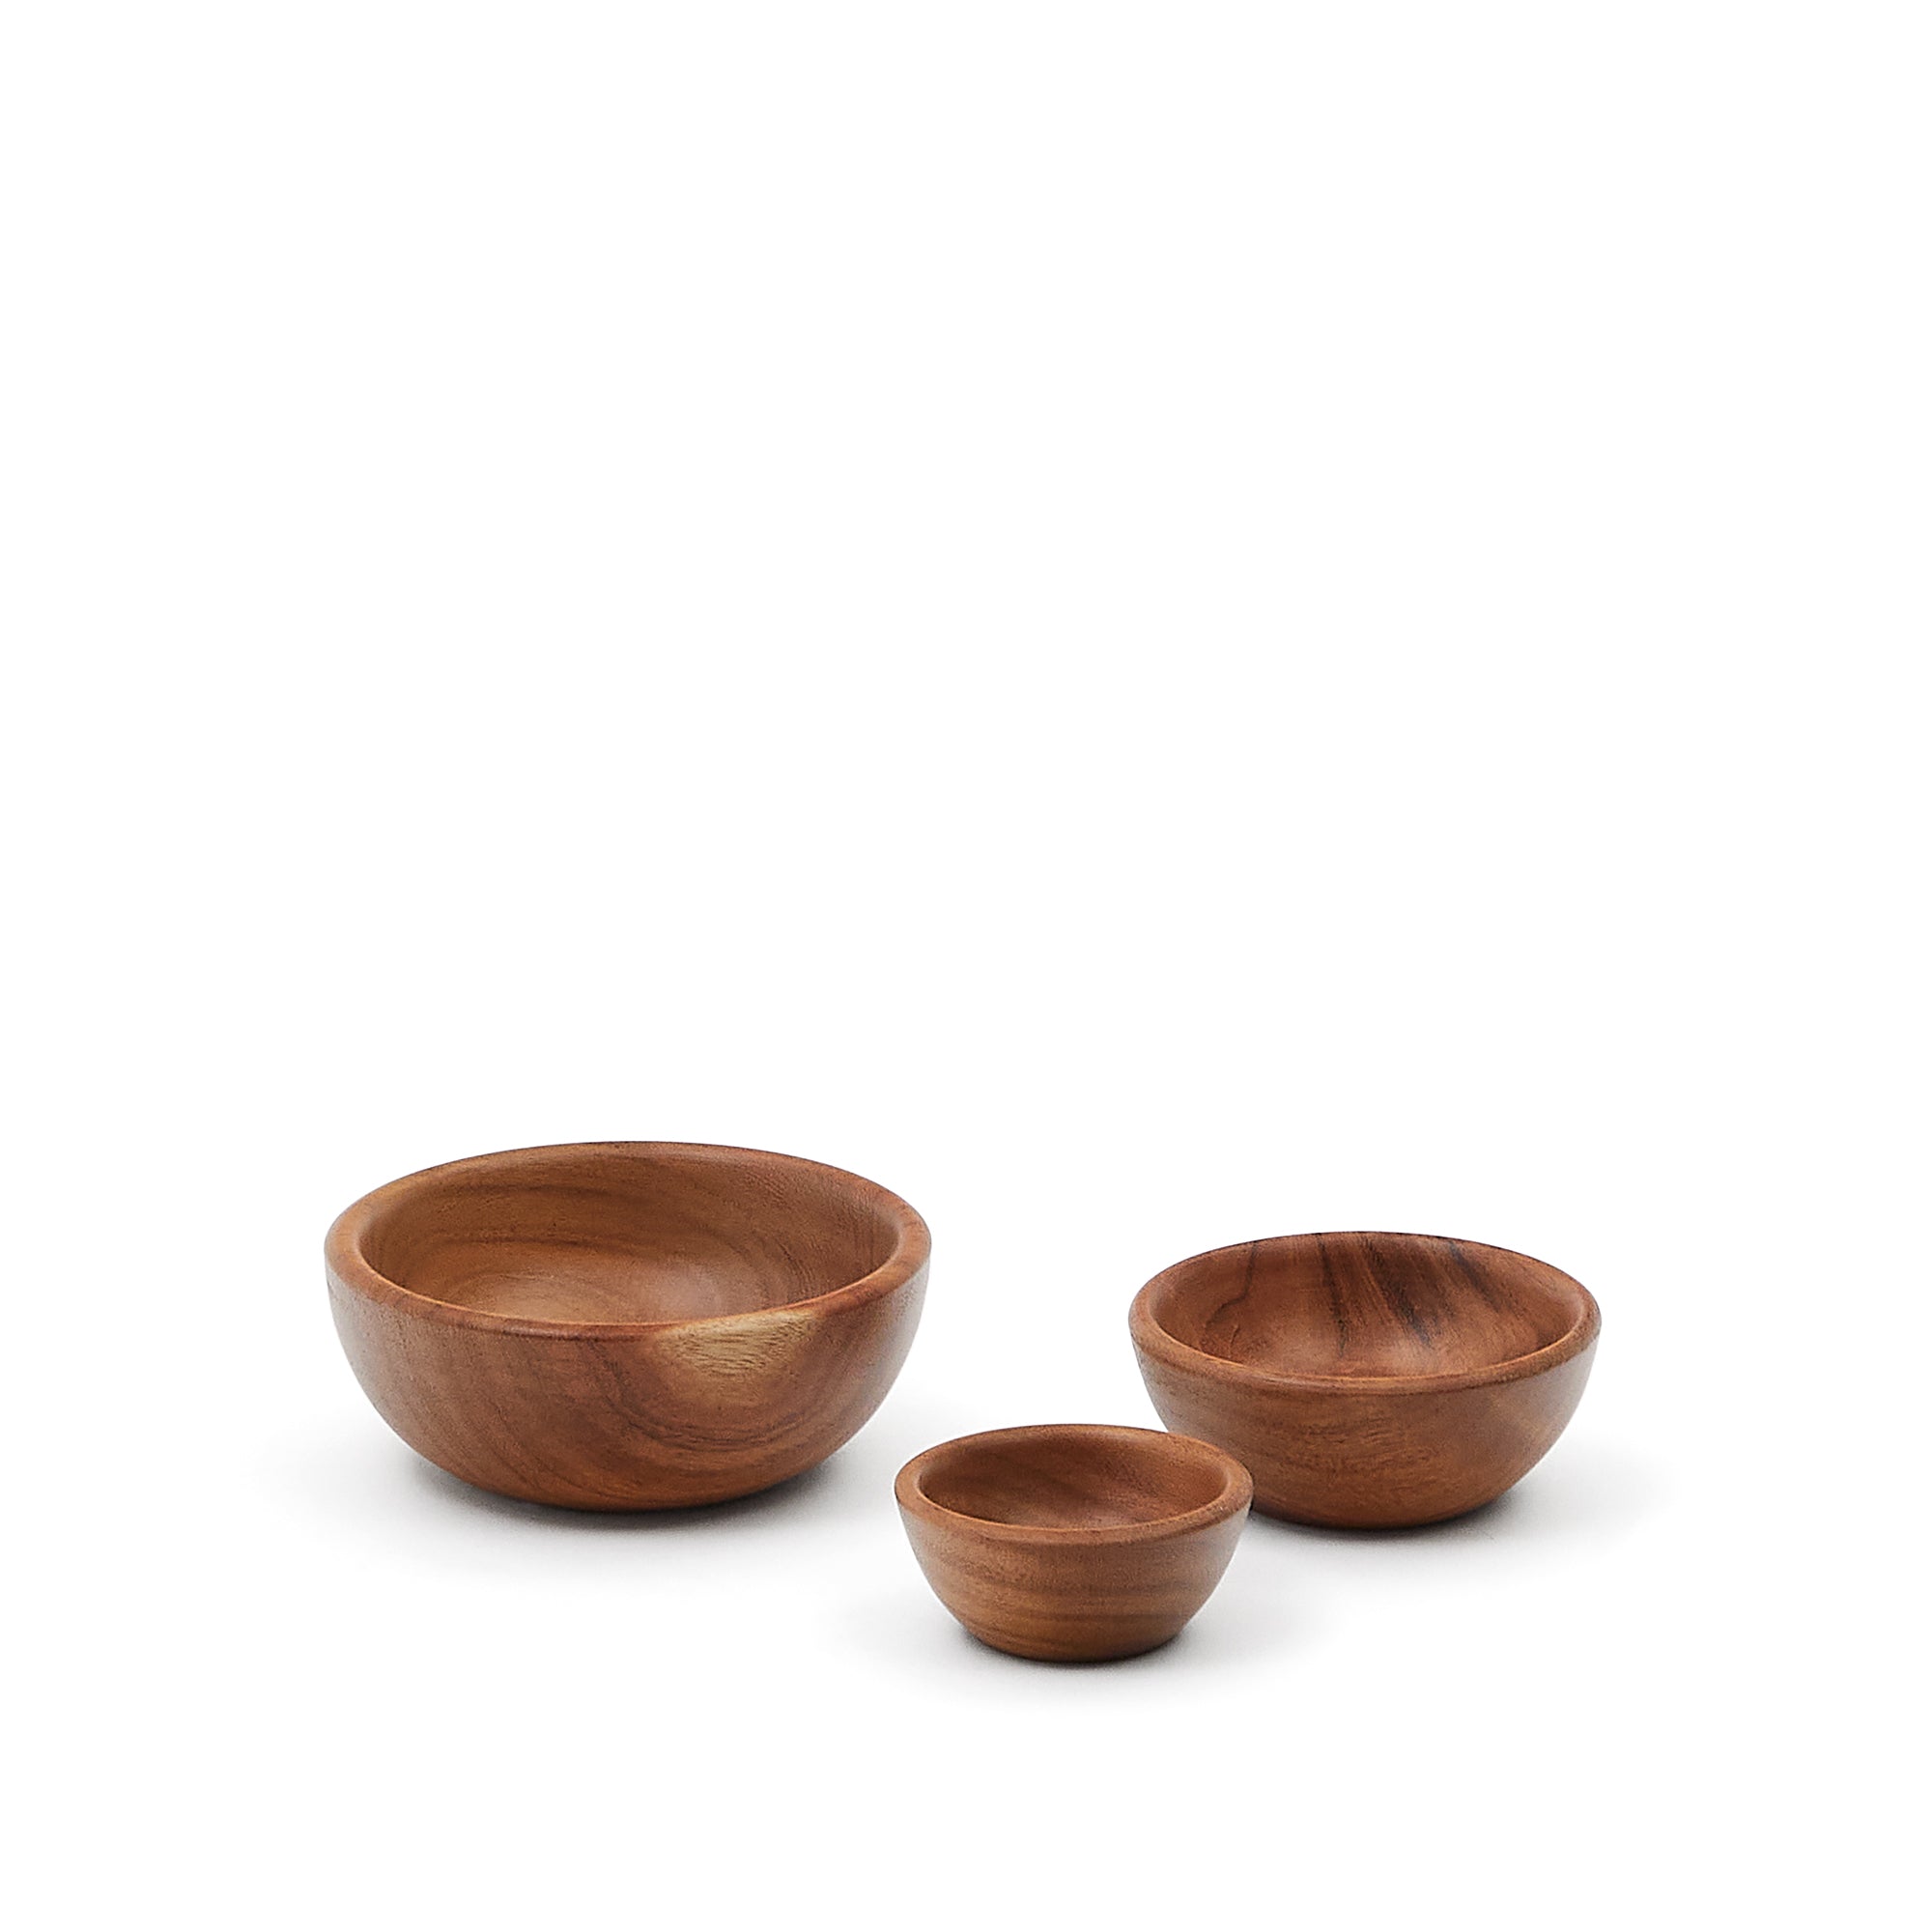 Selvira set of 3 acacia wood bowls